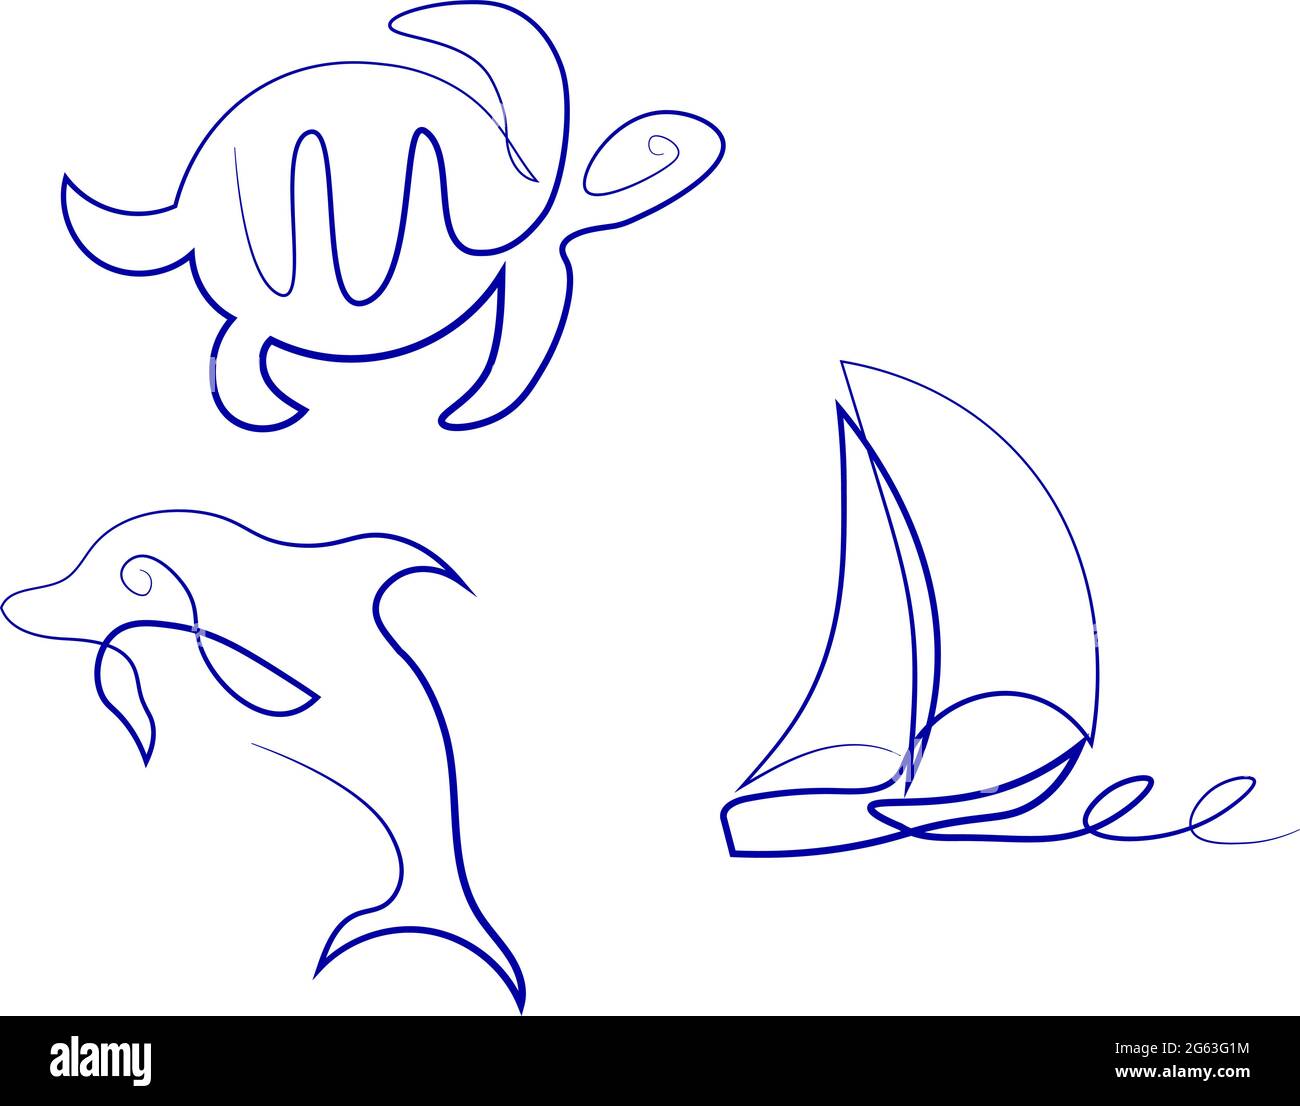 Dibujo en una sola línea estilo clip art con animales de mar y velero Ilustración del Vector